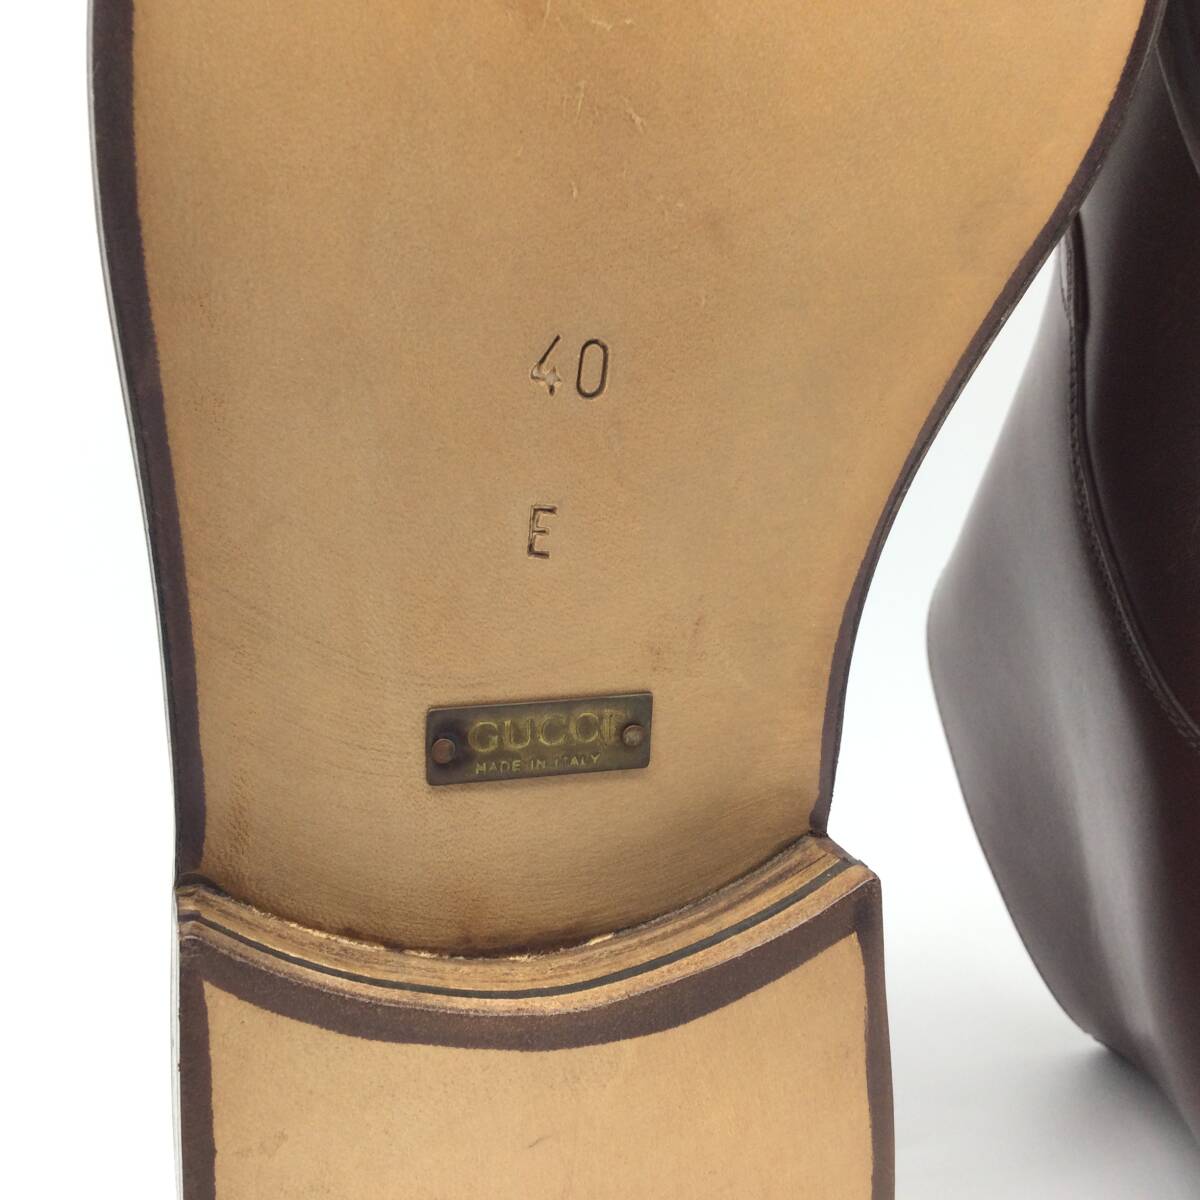 [3721] превосходный товар GUCCI мужской обувь monk ремешок ботинки Loafer кожа обувь машина f кожа Brown бизнес обувь 40E примерно 26.